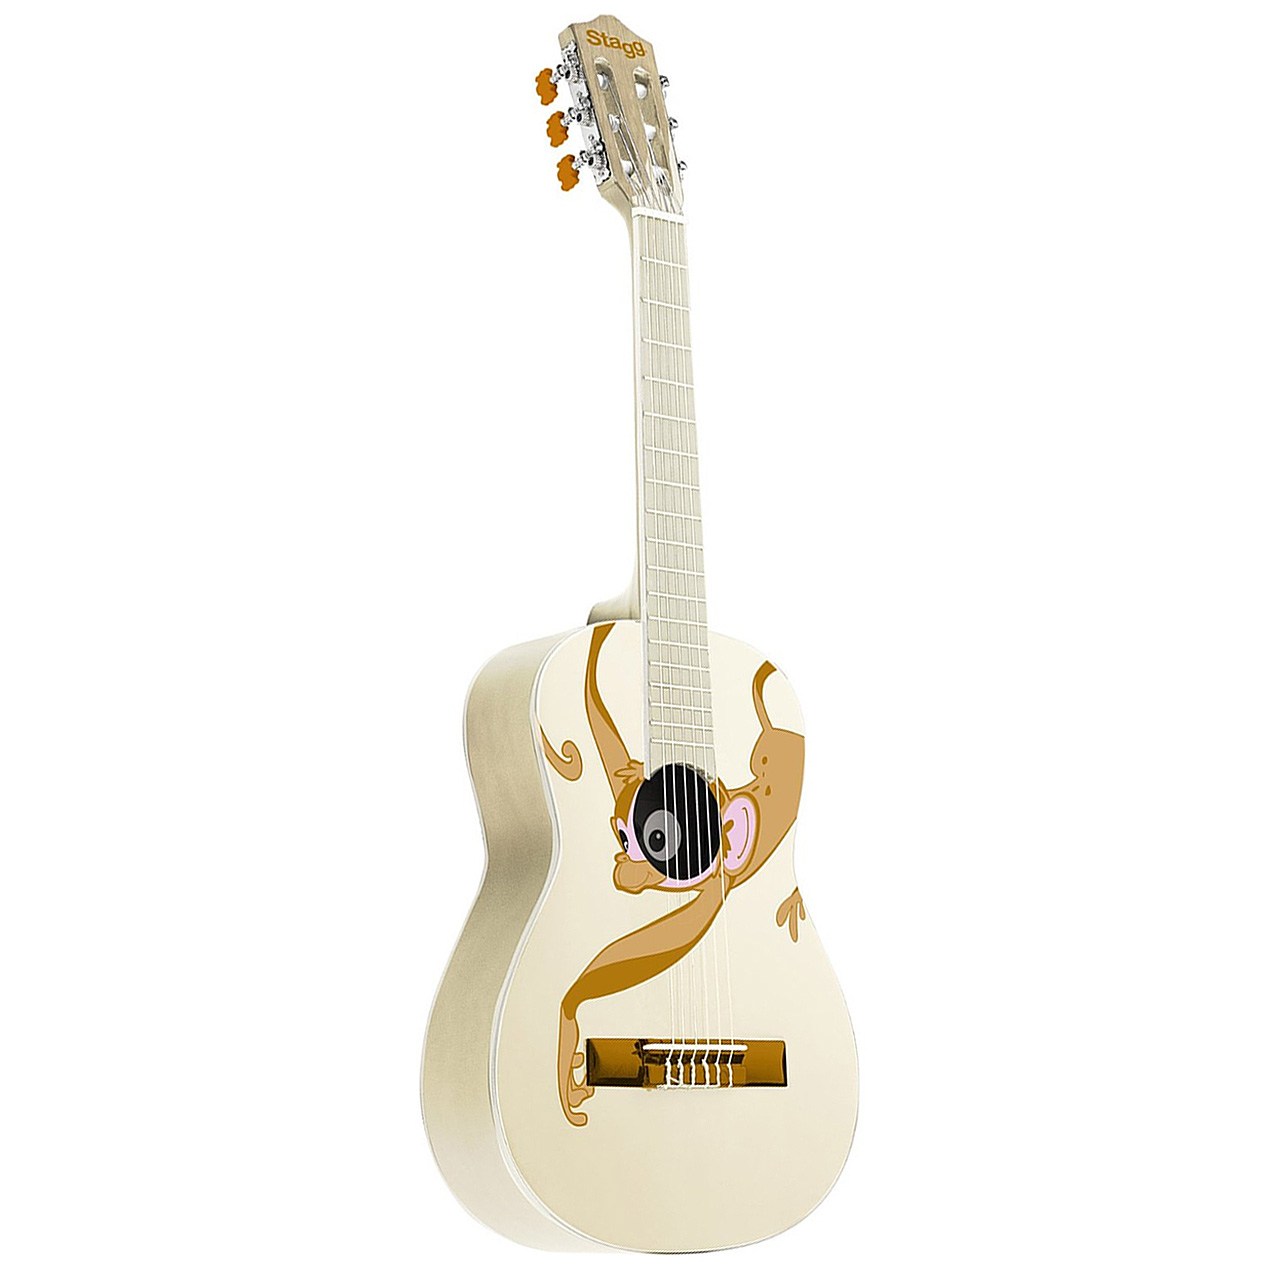 گیتار کلاسیک استگ مدل C530 Monkey سایز 3/4